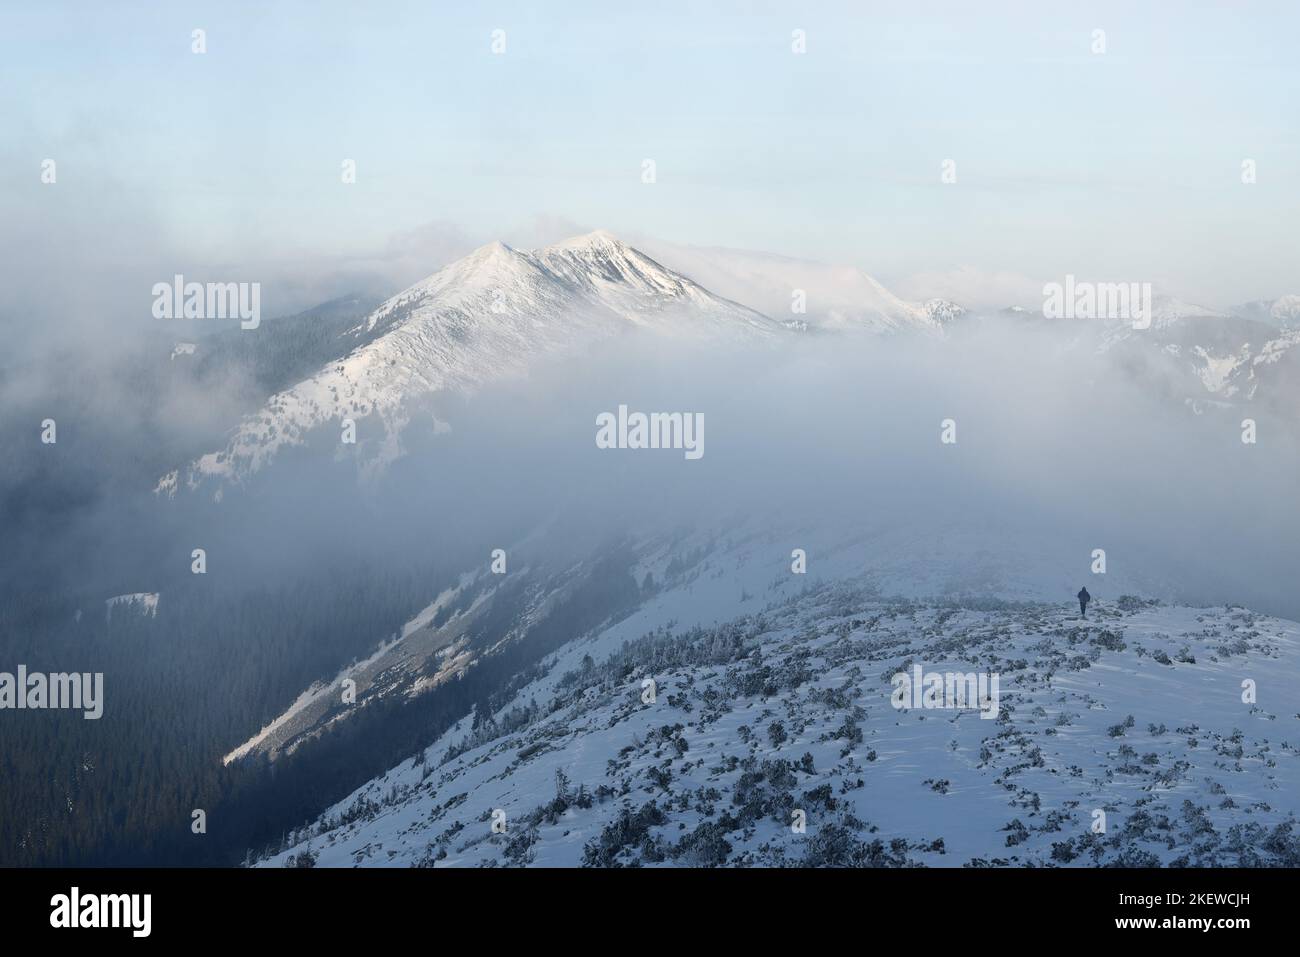 Paisaje de montaña de invierno con un pico nevado y un hombre en la cresta de la cresta en una caminata invernal extrema Foto de stock